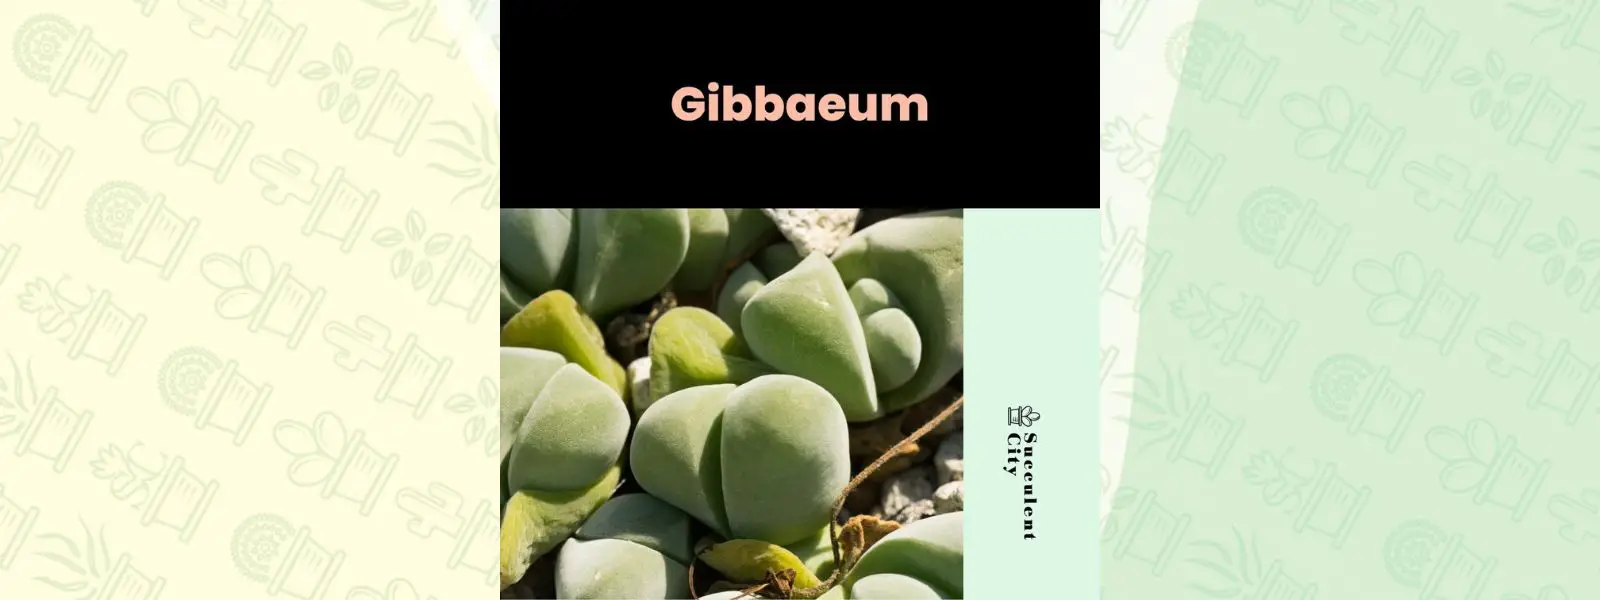 Género “Gibbaeum”.